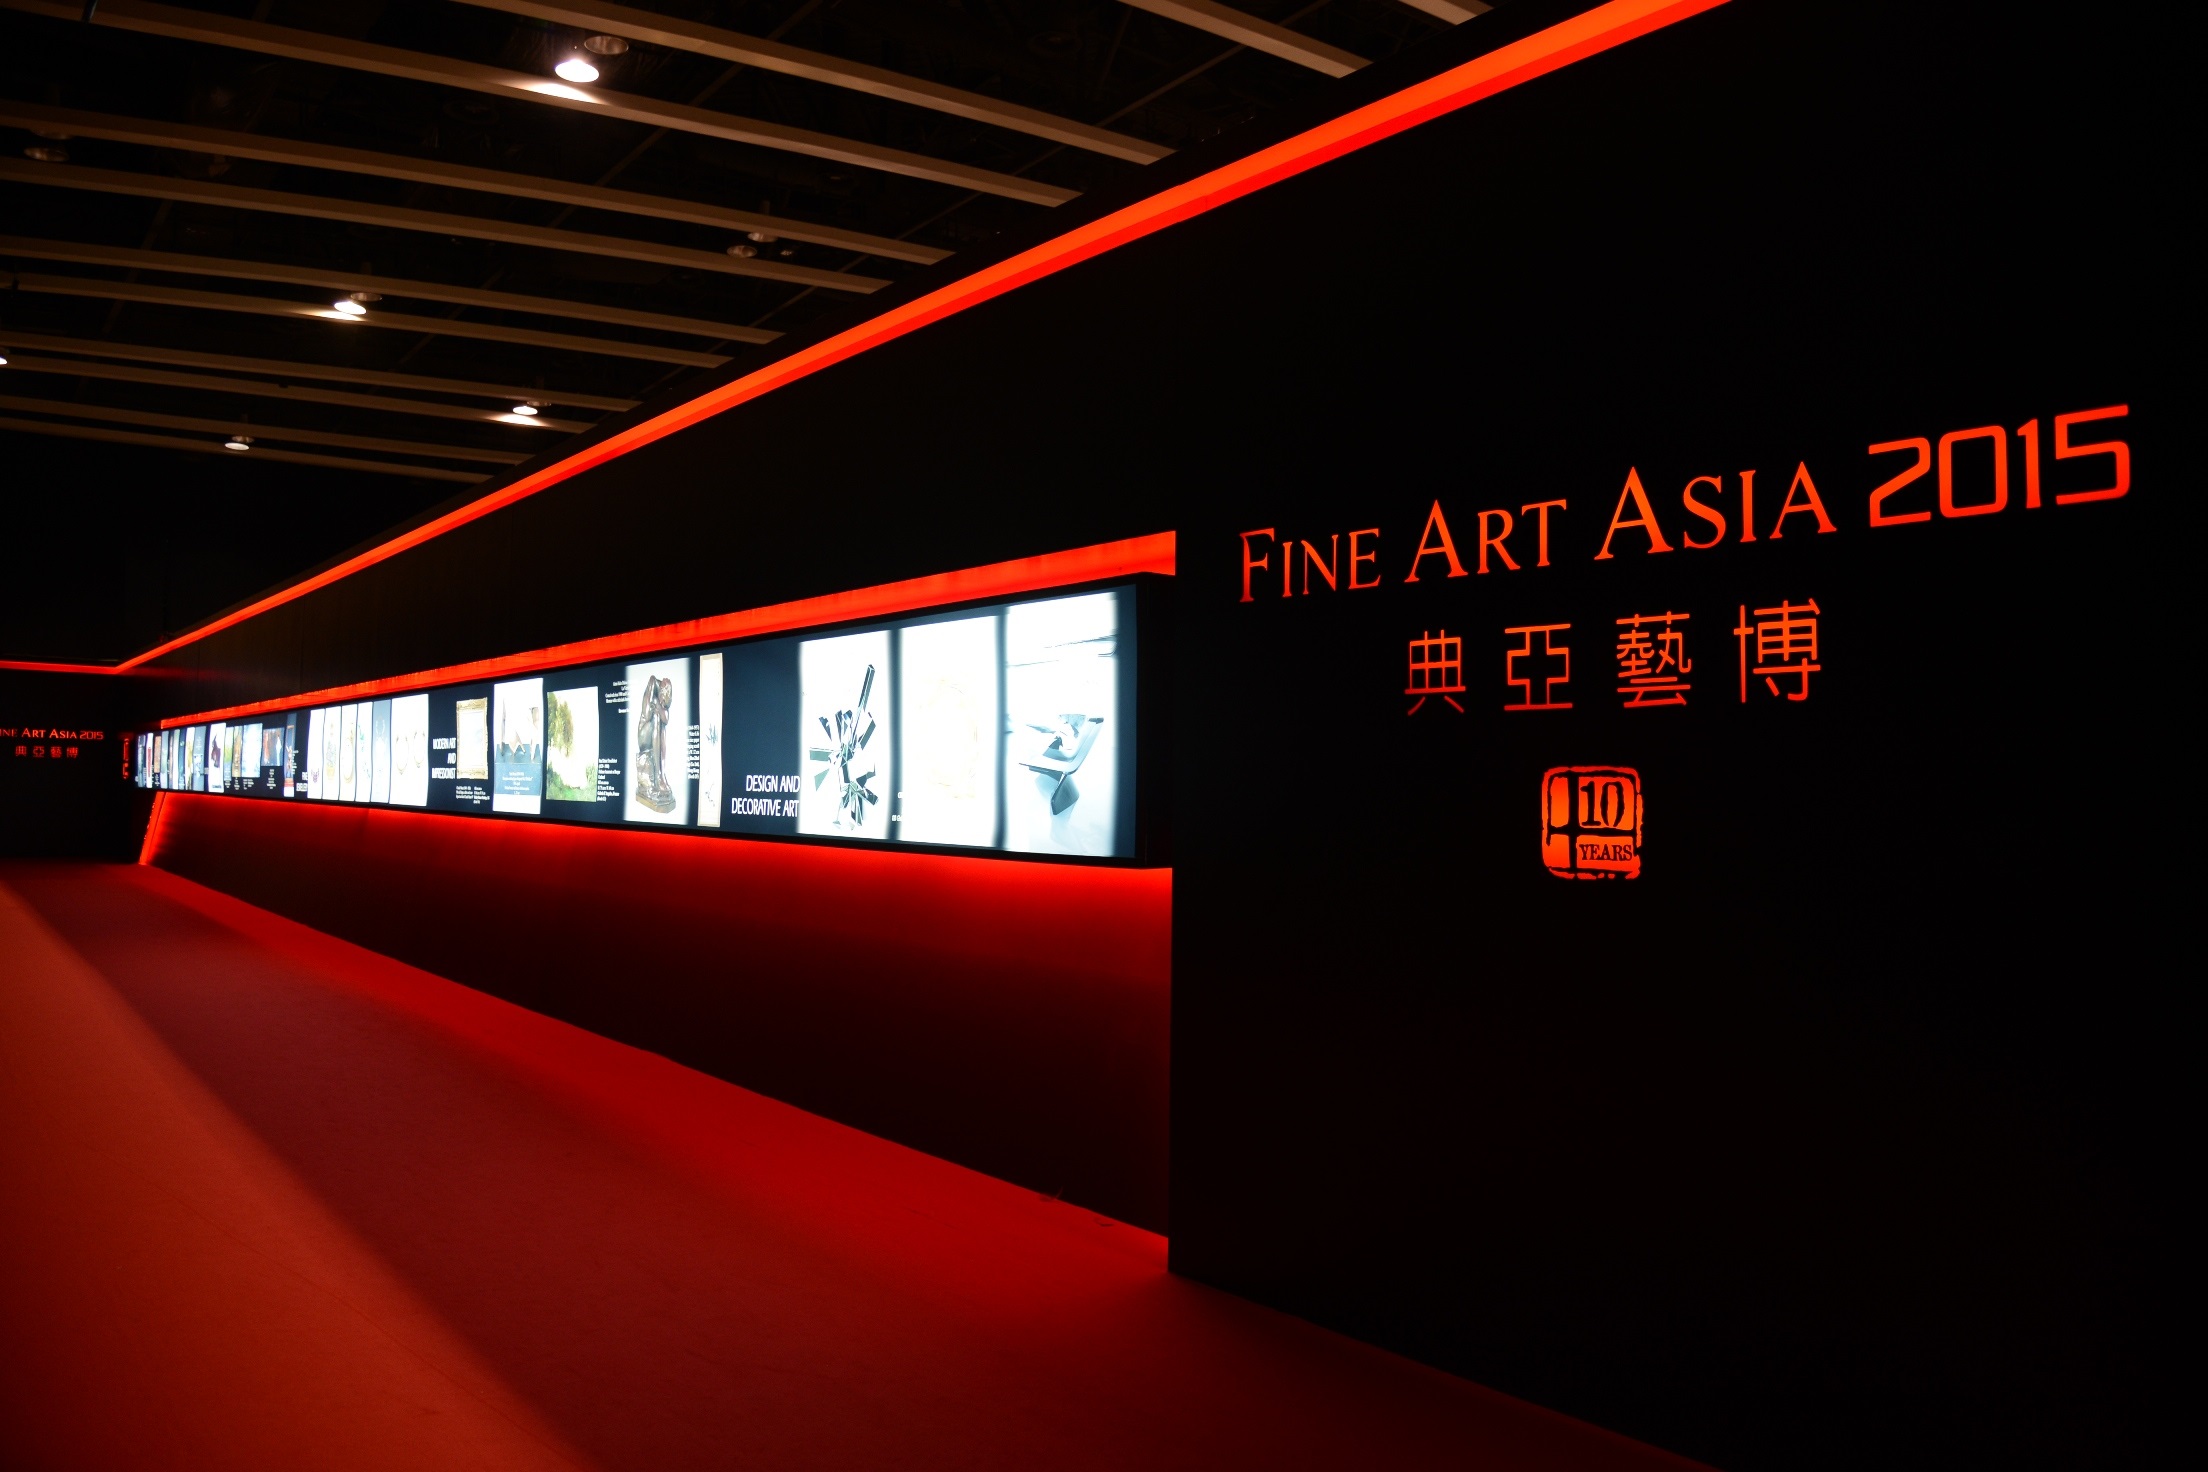 第十一屆典亞藝博 (Fine Art Asia 2015) 將於10月4至7日假香港會議展覽中心呈獻